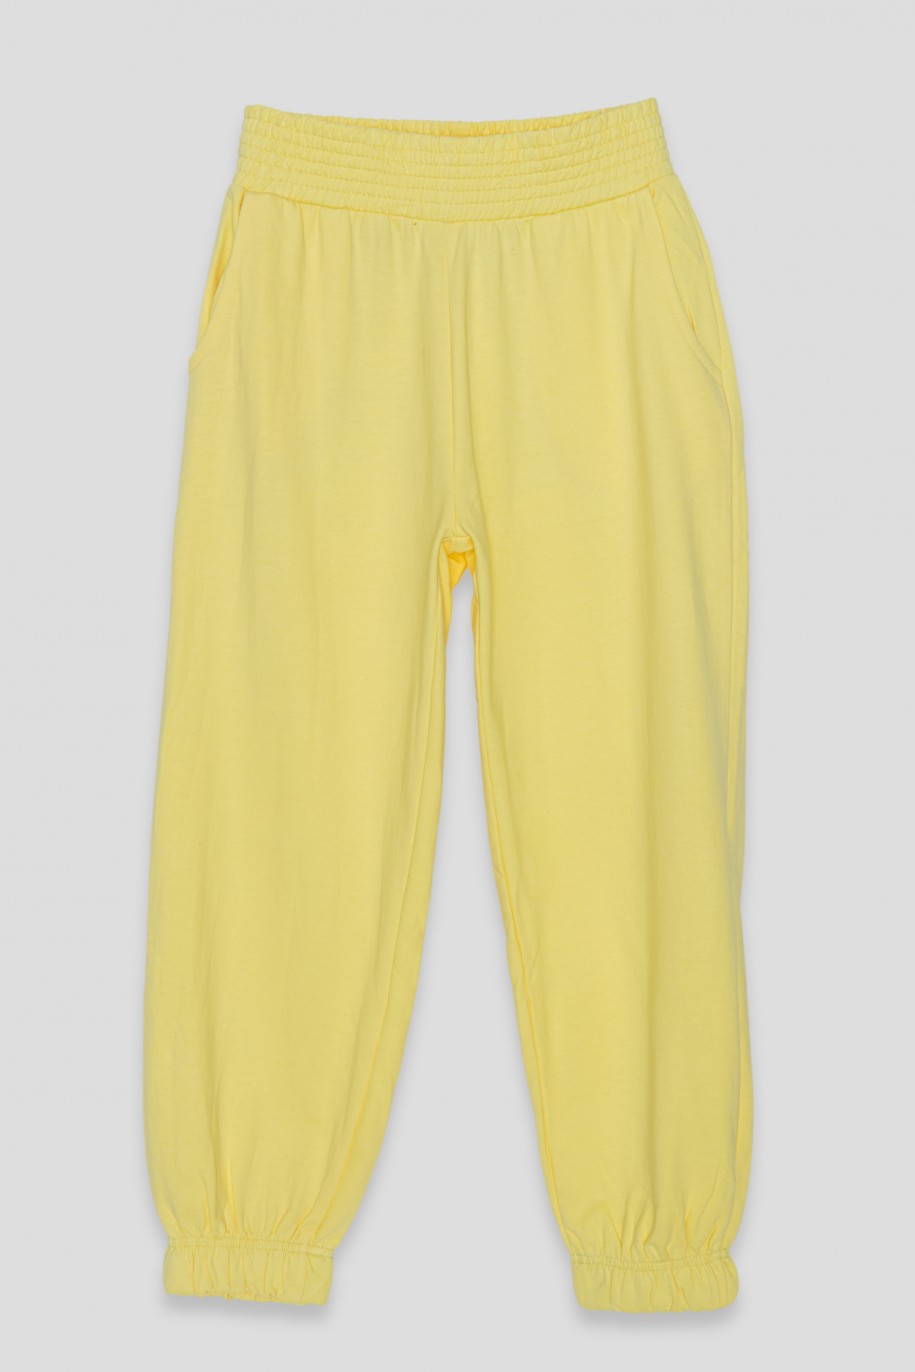 Żółte pastelowe spodnie dresowe ze ściągaczem - 35951